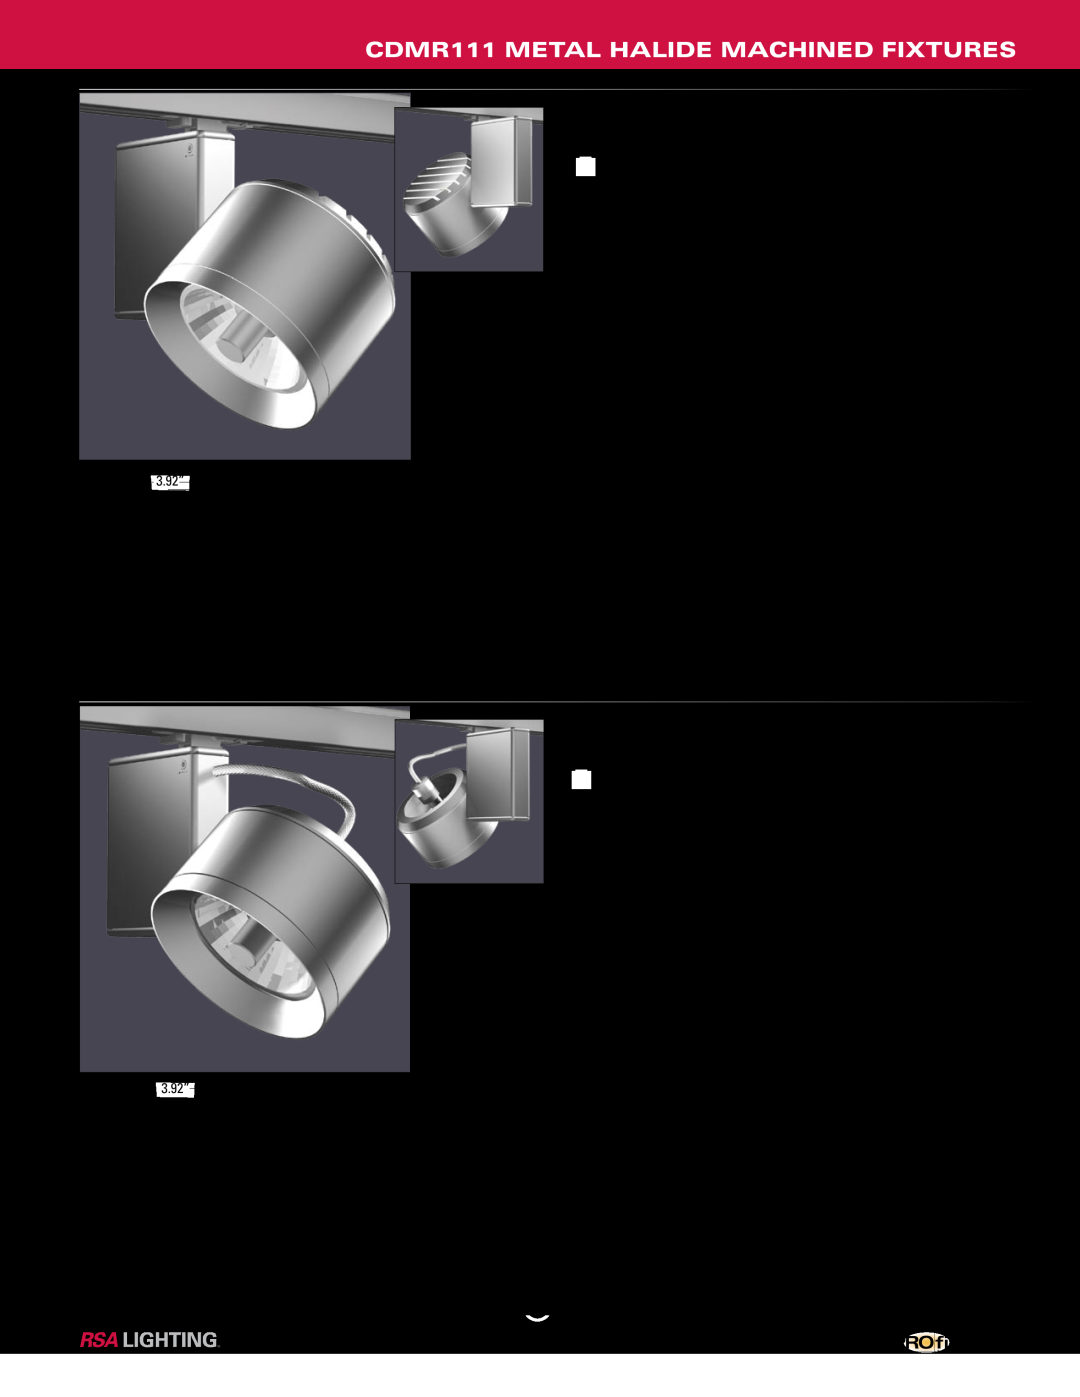 Profile Machined Aluminum Fixtures manual CDMR111 METAL HALIDE MACHINED FIXTURES, PM637cb-39-AL-120, PM637ob-39-AL-120 